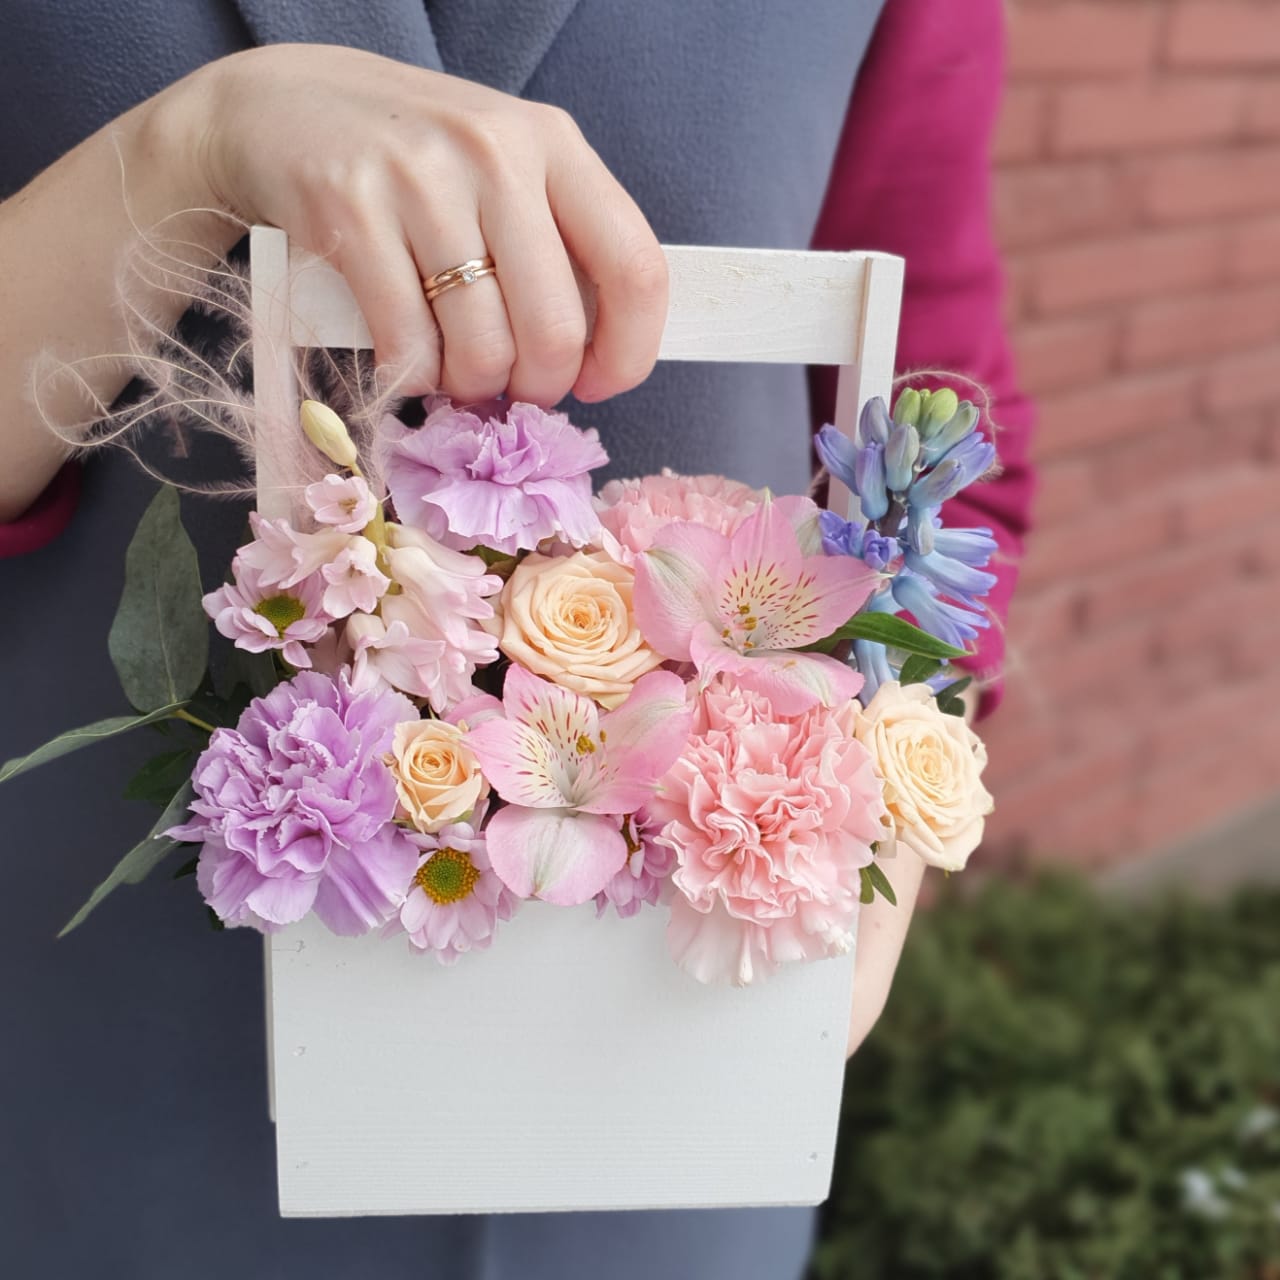 Купить букет / цветы Каталина в Москве с доставкой по отличной цене